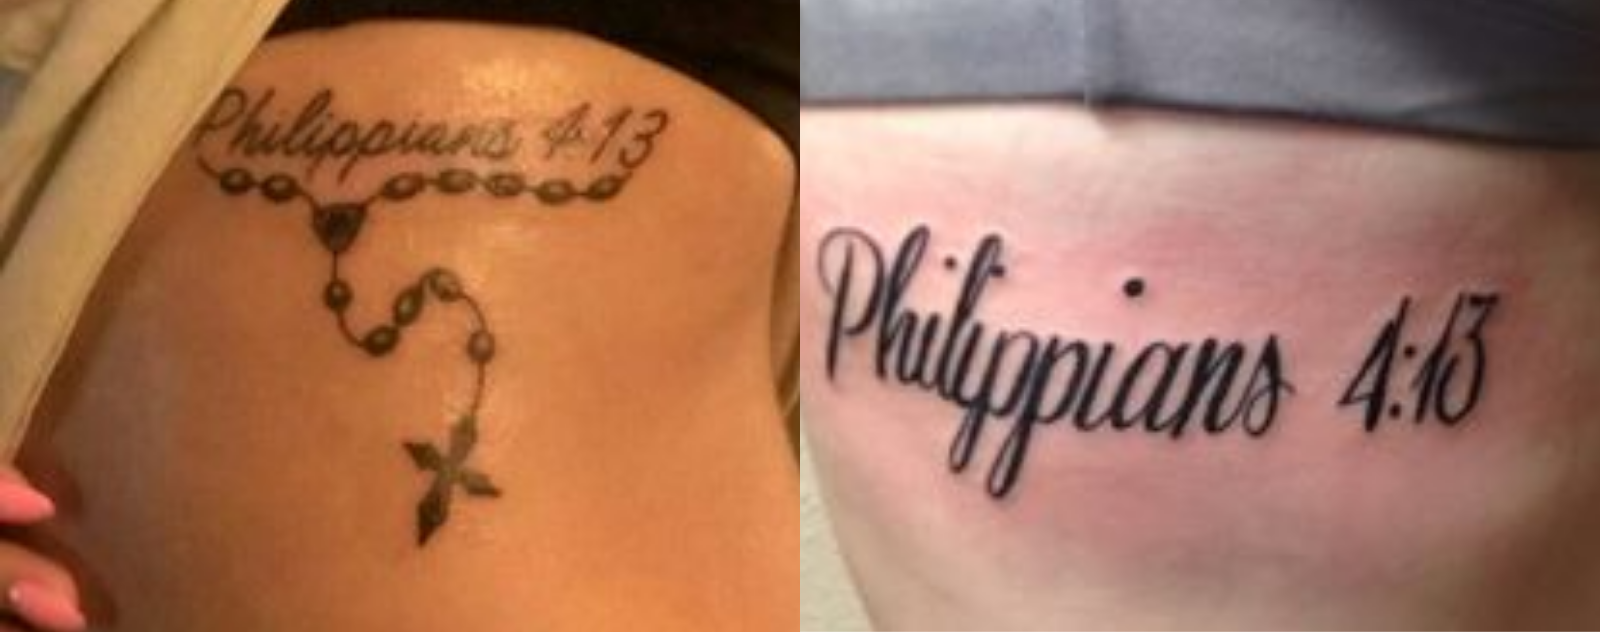 philippians-4-13-tattoo-ribs-7